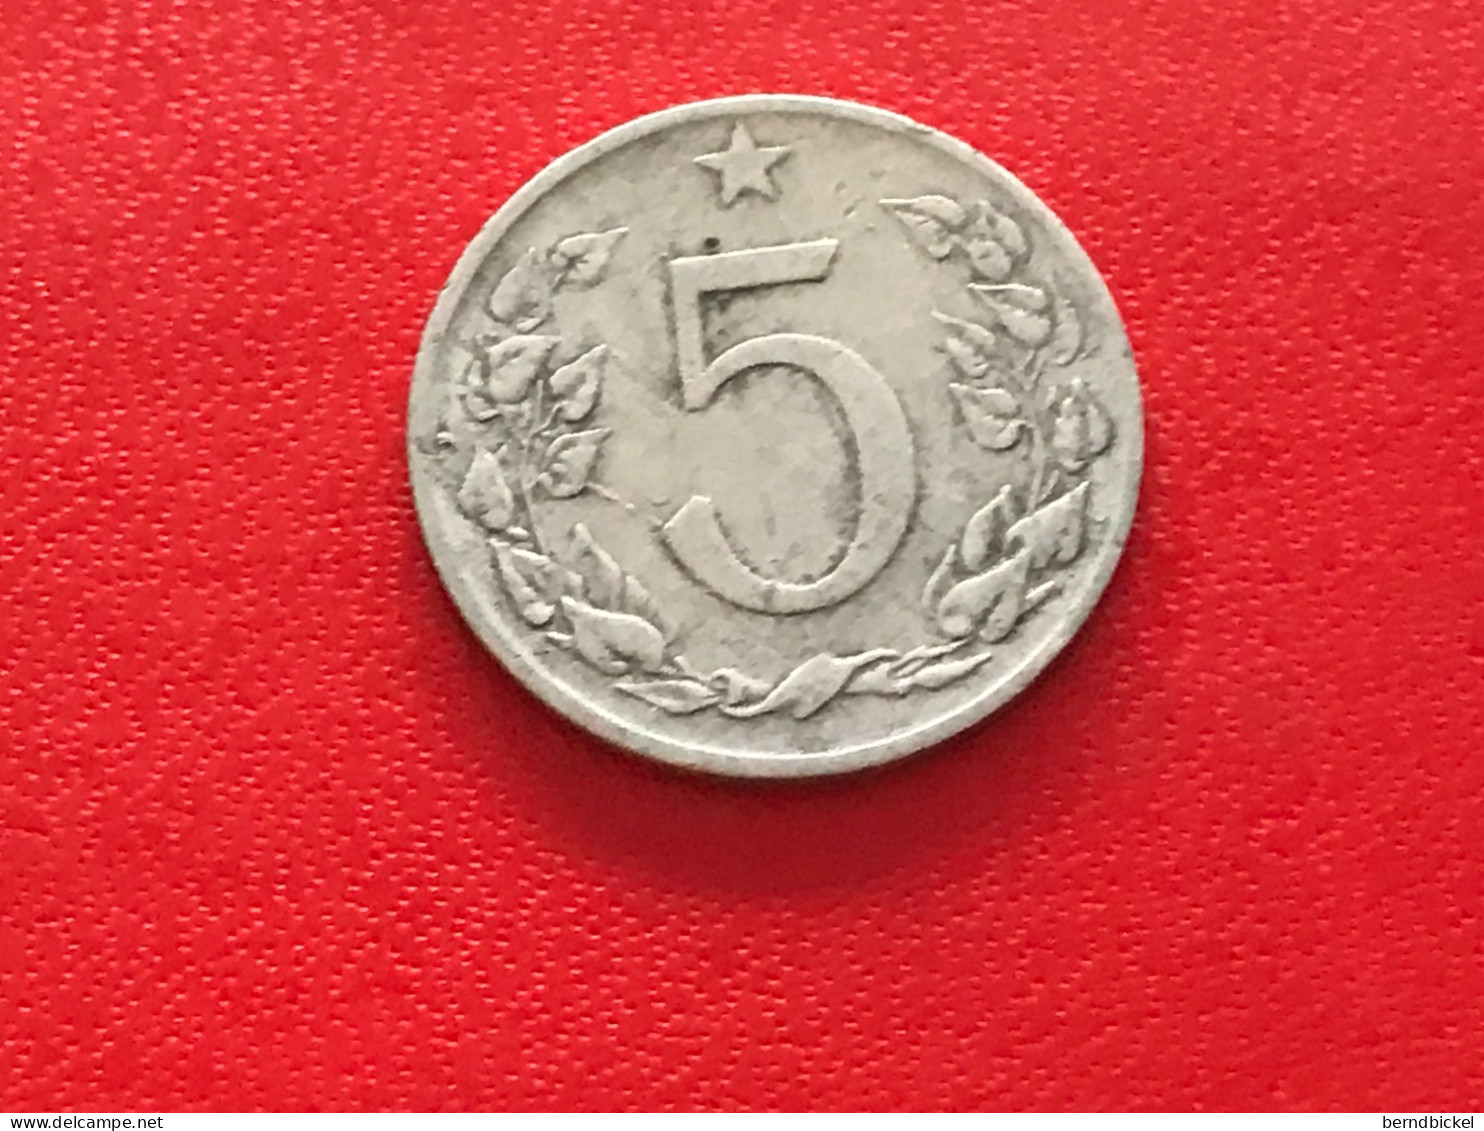 Münze Münzen Umlaufmünze Tschechoslowakei 5 Heller 1953 - Tschechoslowakei